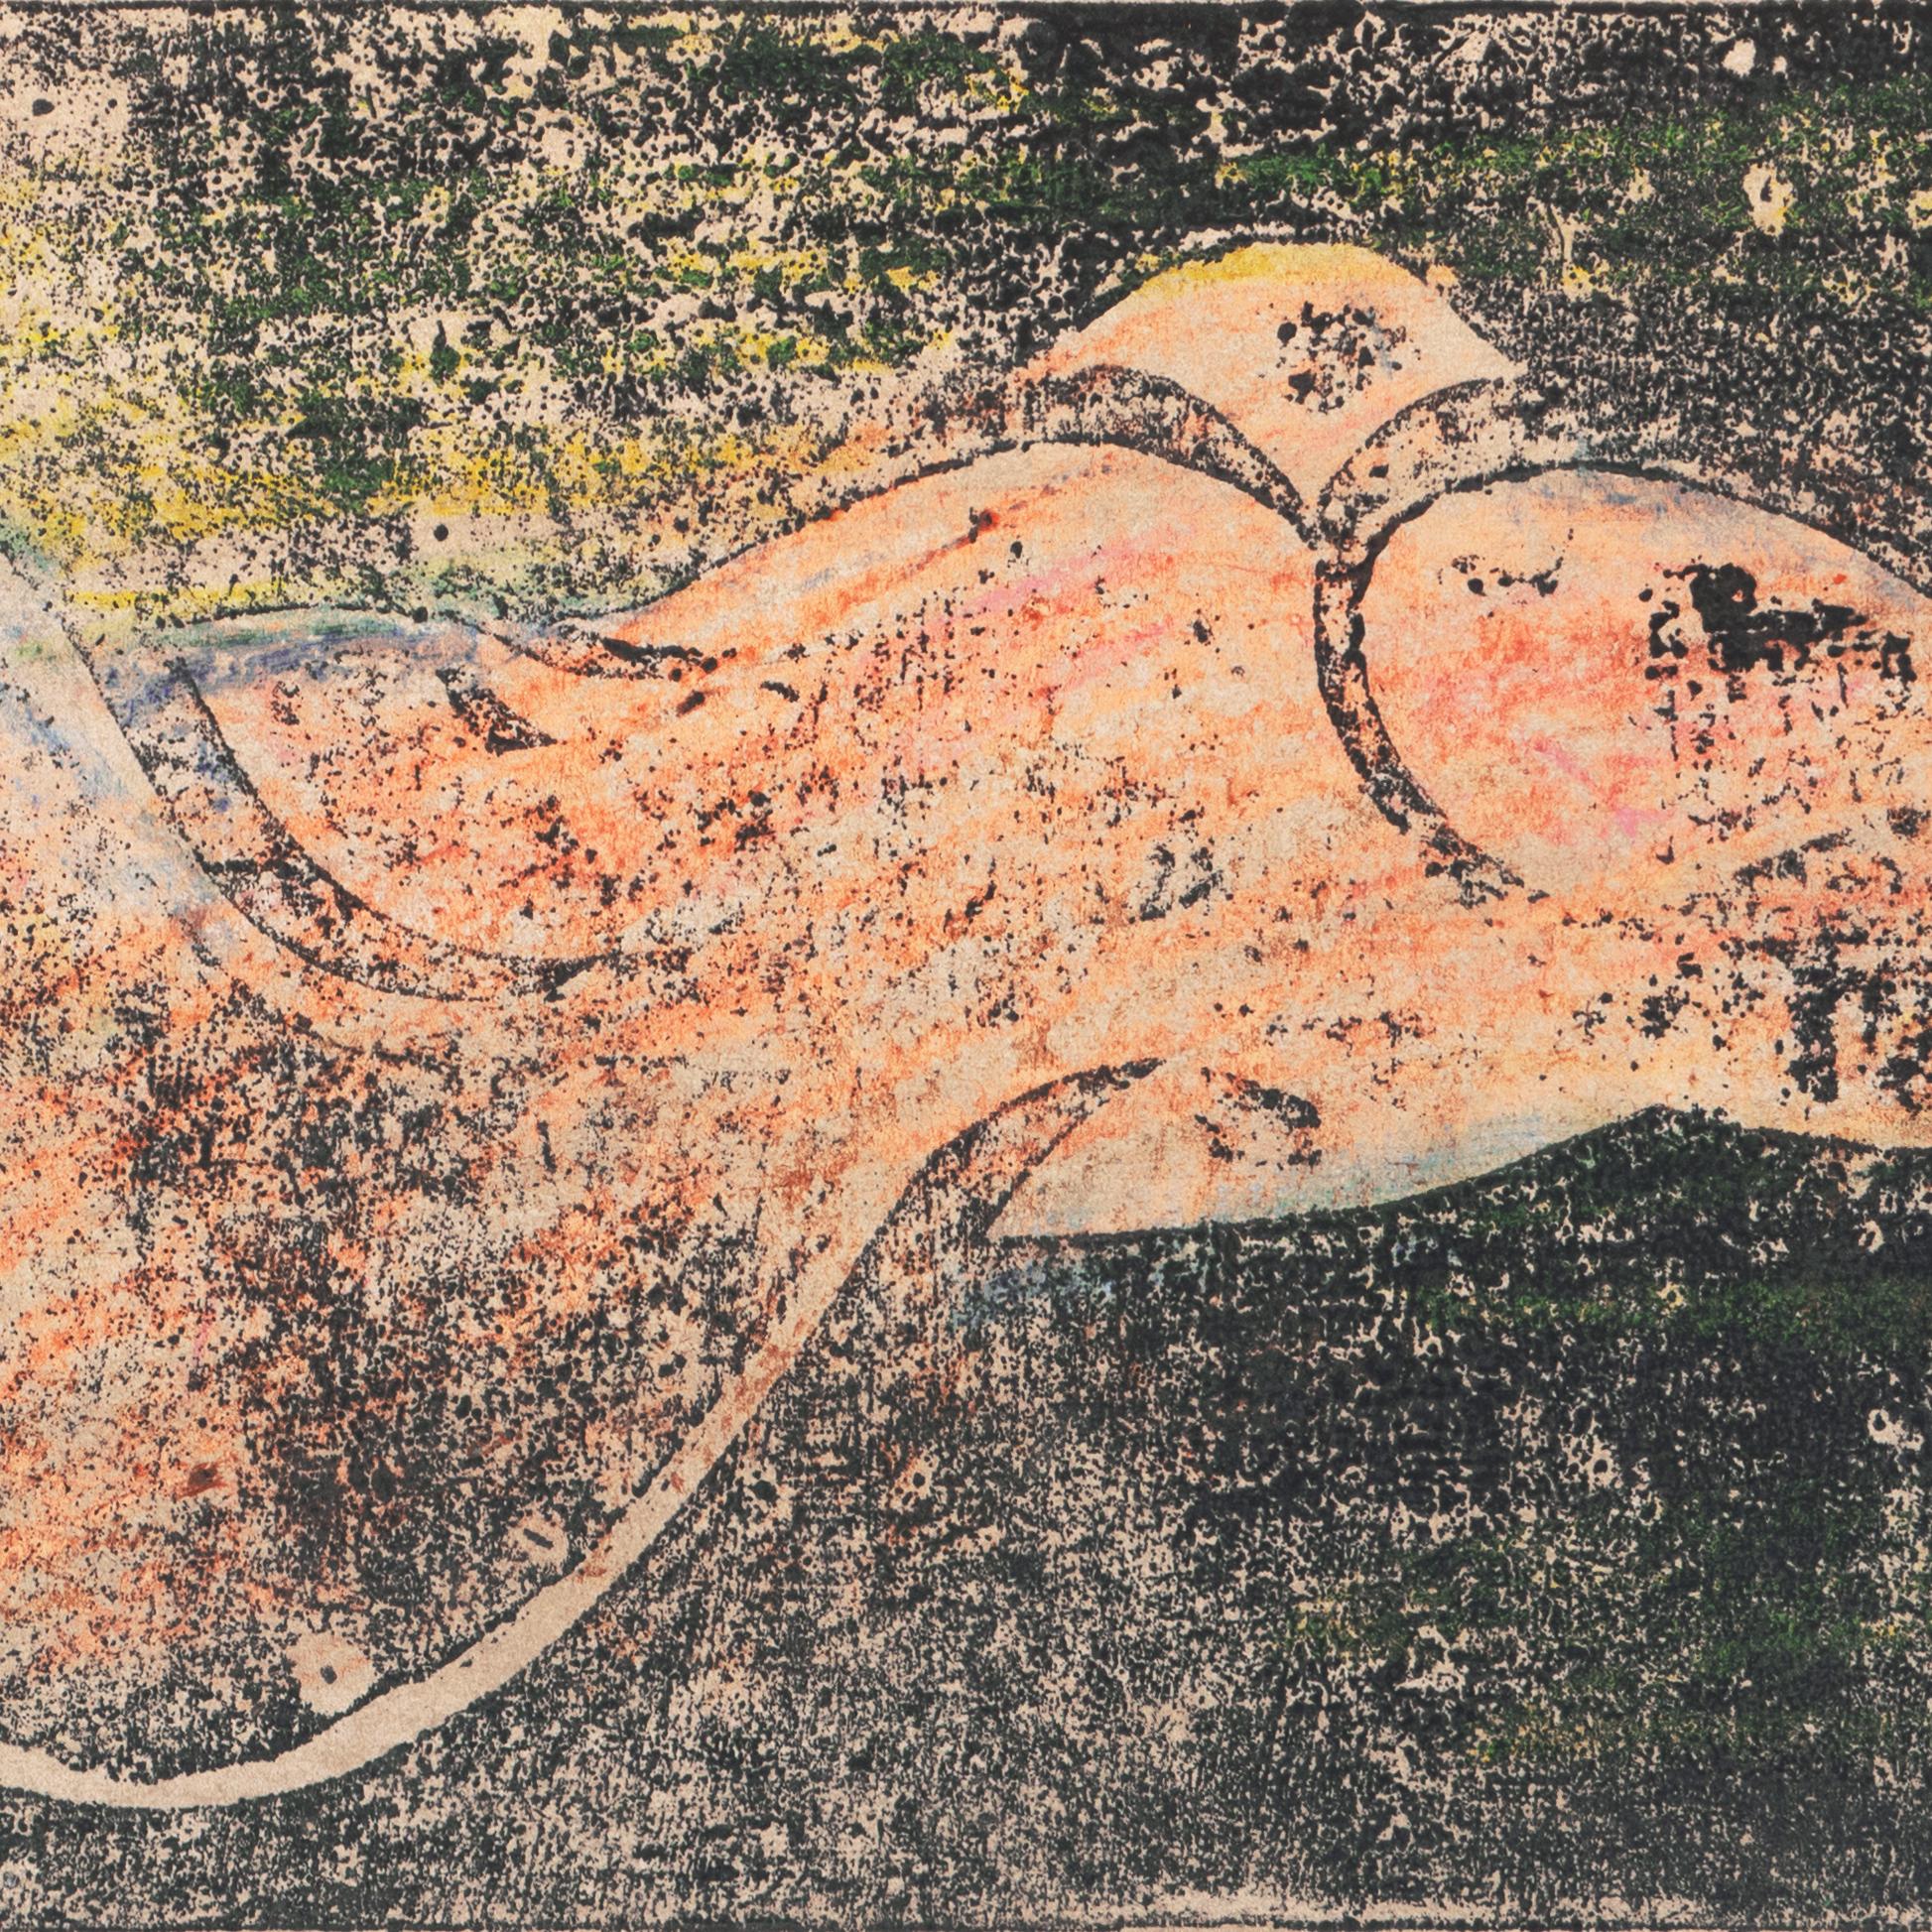 Ein handkolorierter Linolschnitt aus der Zeit um 1950  von Wedo Georgetti (Amerikaner, 1911-2005) und verso mit einem Echtheitszertifikat versehen.

Der in Italien geborene kalifornische Post-Impressionist kam im Alter von einem Jahr in die